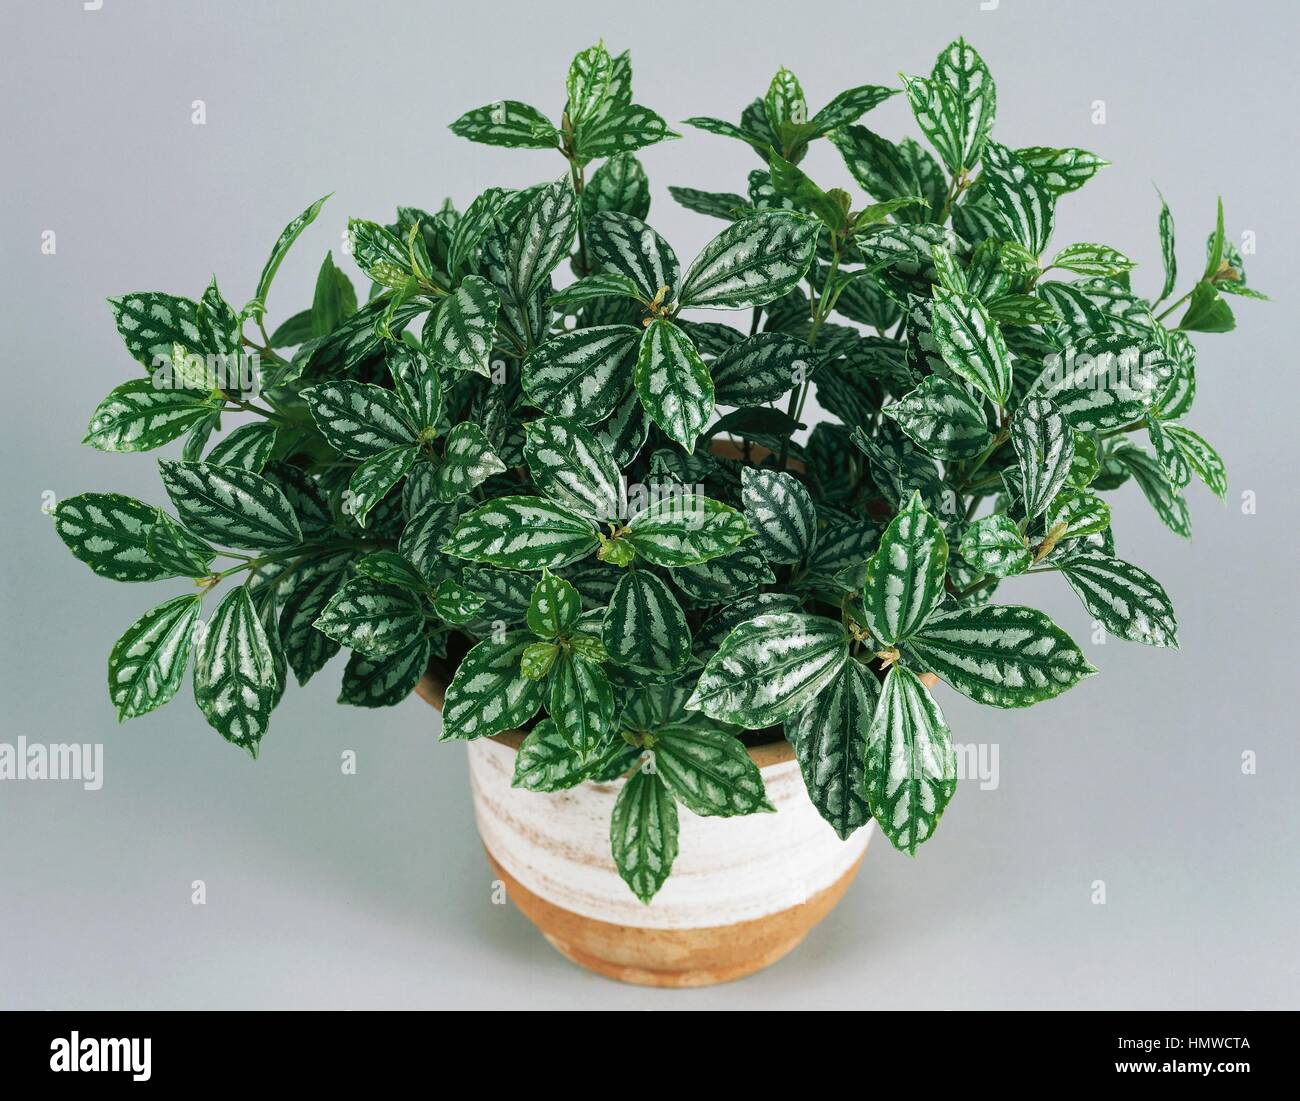 Aluminium plant or Watermelon pilea (Pilea cadierei compacta), Urticaceae. Stock Photo